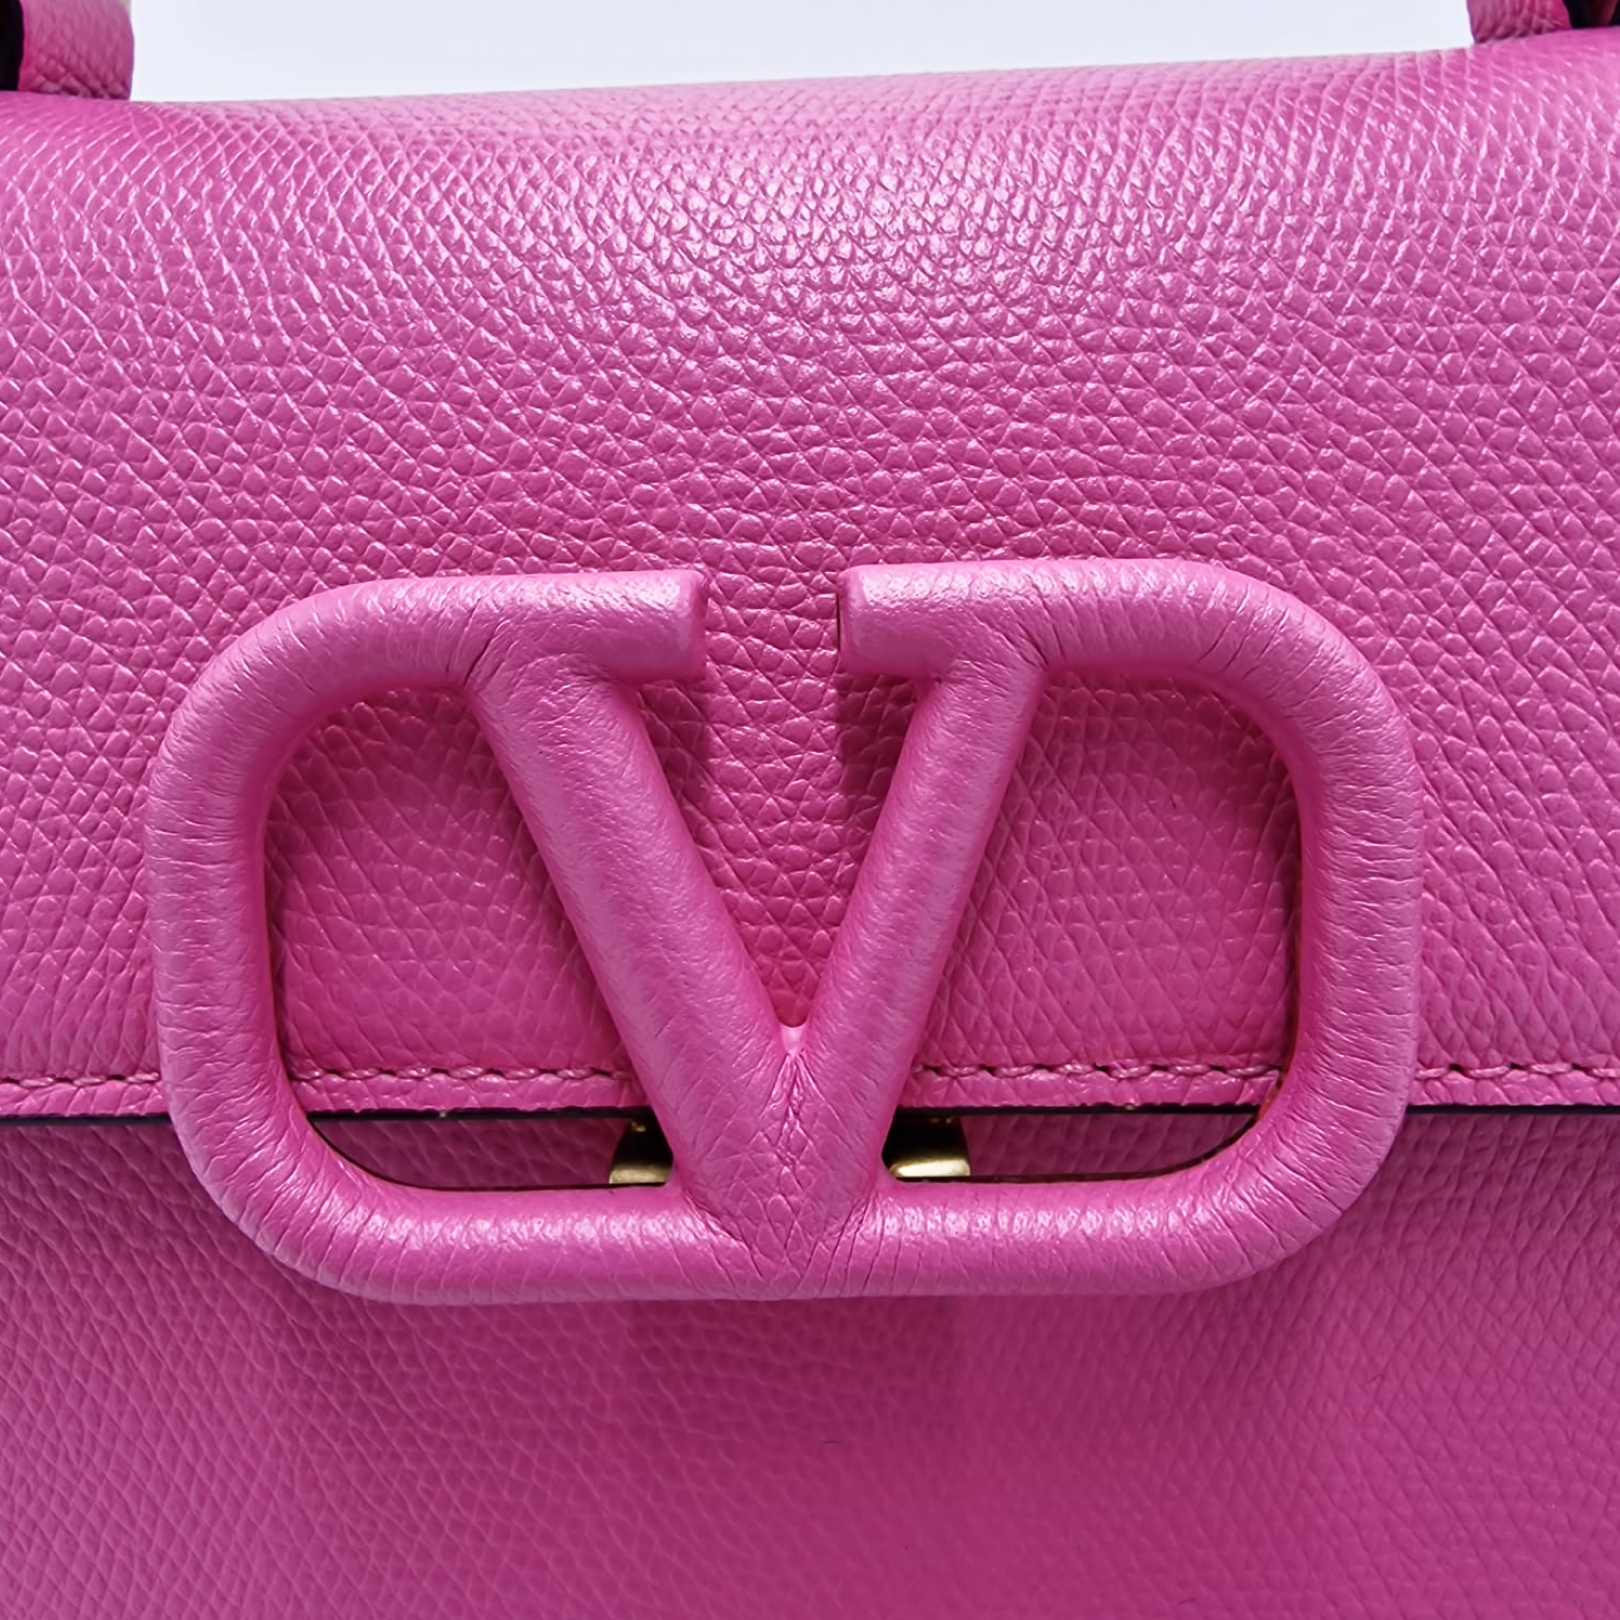 Valentino Garavani VSLING Handbag Pink